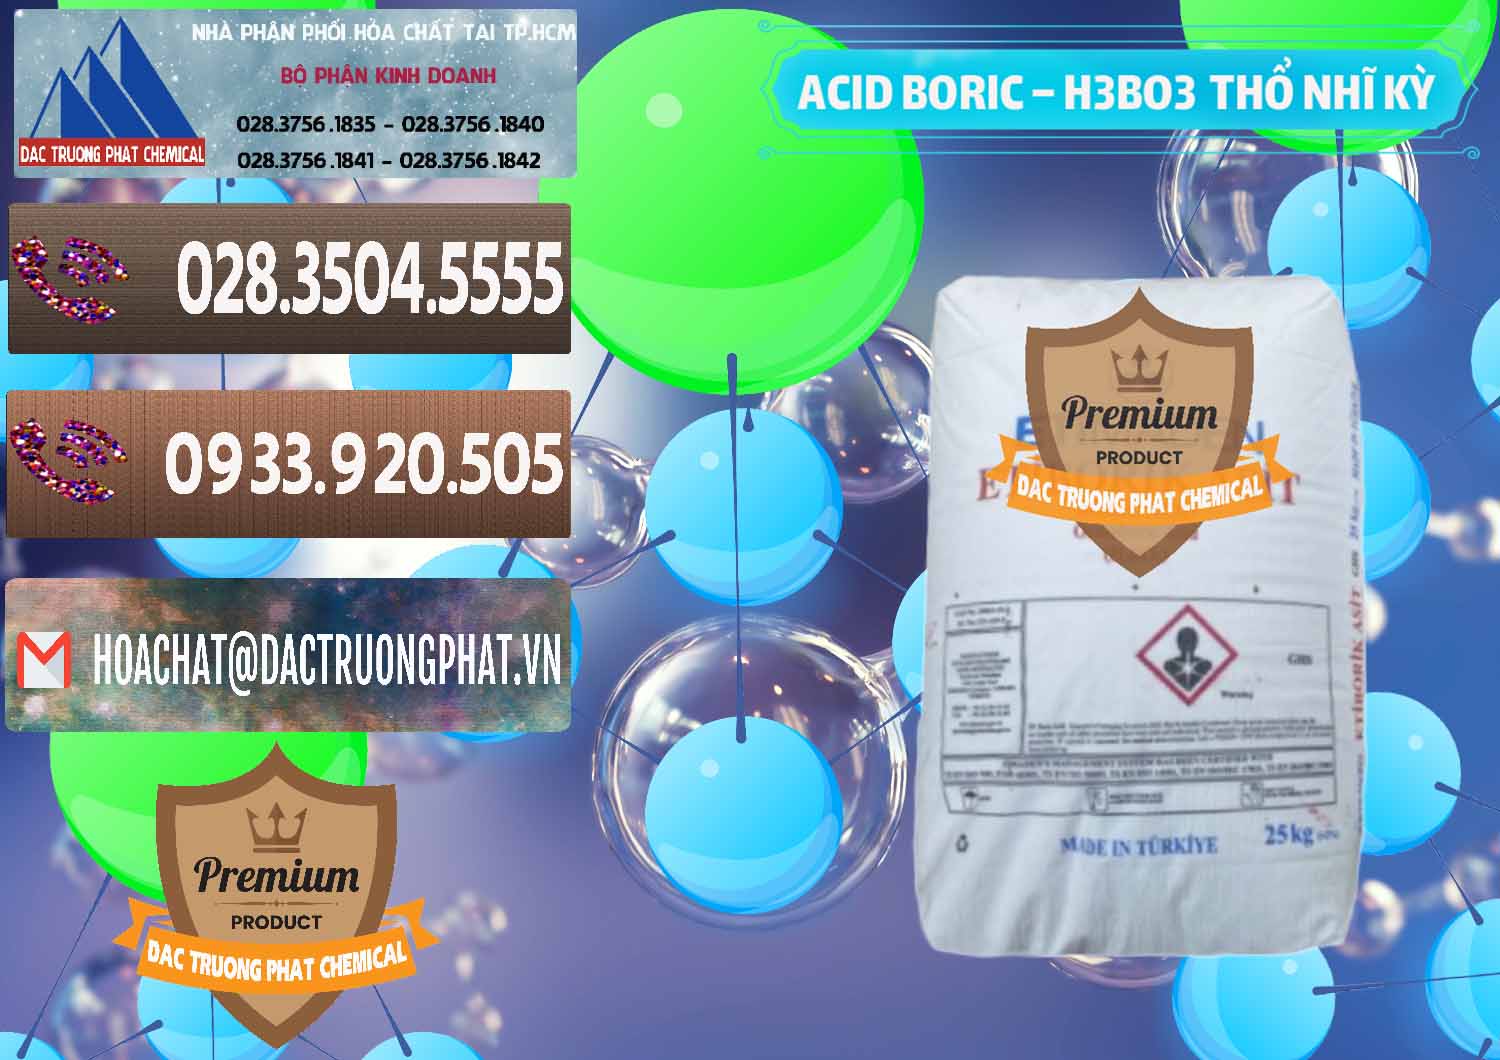 Cty bán - cung ứng Acid Boric – Axit Boric H3BO3 Etimaden Thổ Nhĩ Kỳ Turkey - 0369 - Nơi chuyên kinh doanh & cung cấp hóa chất tại TP.HCM - hoachatviet.net